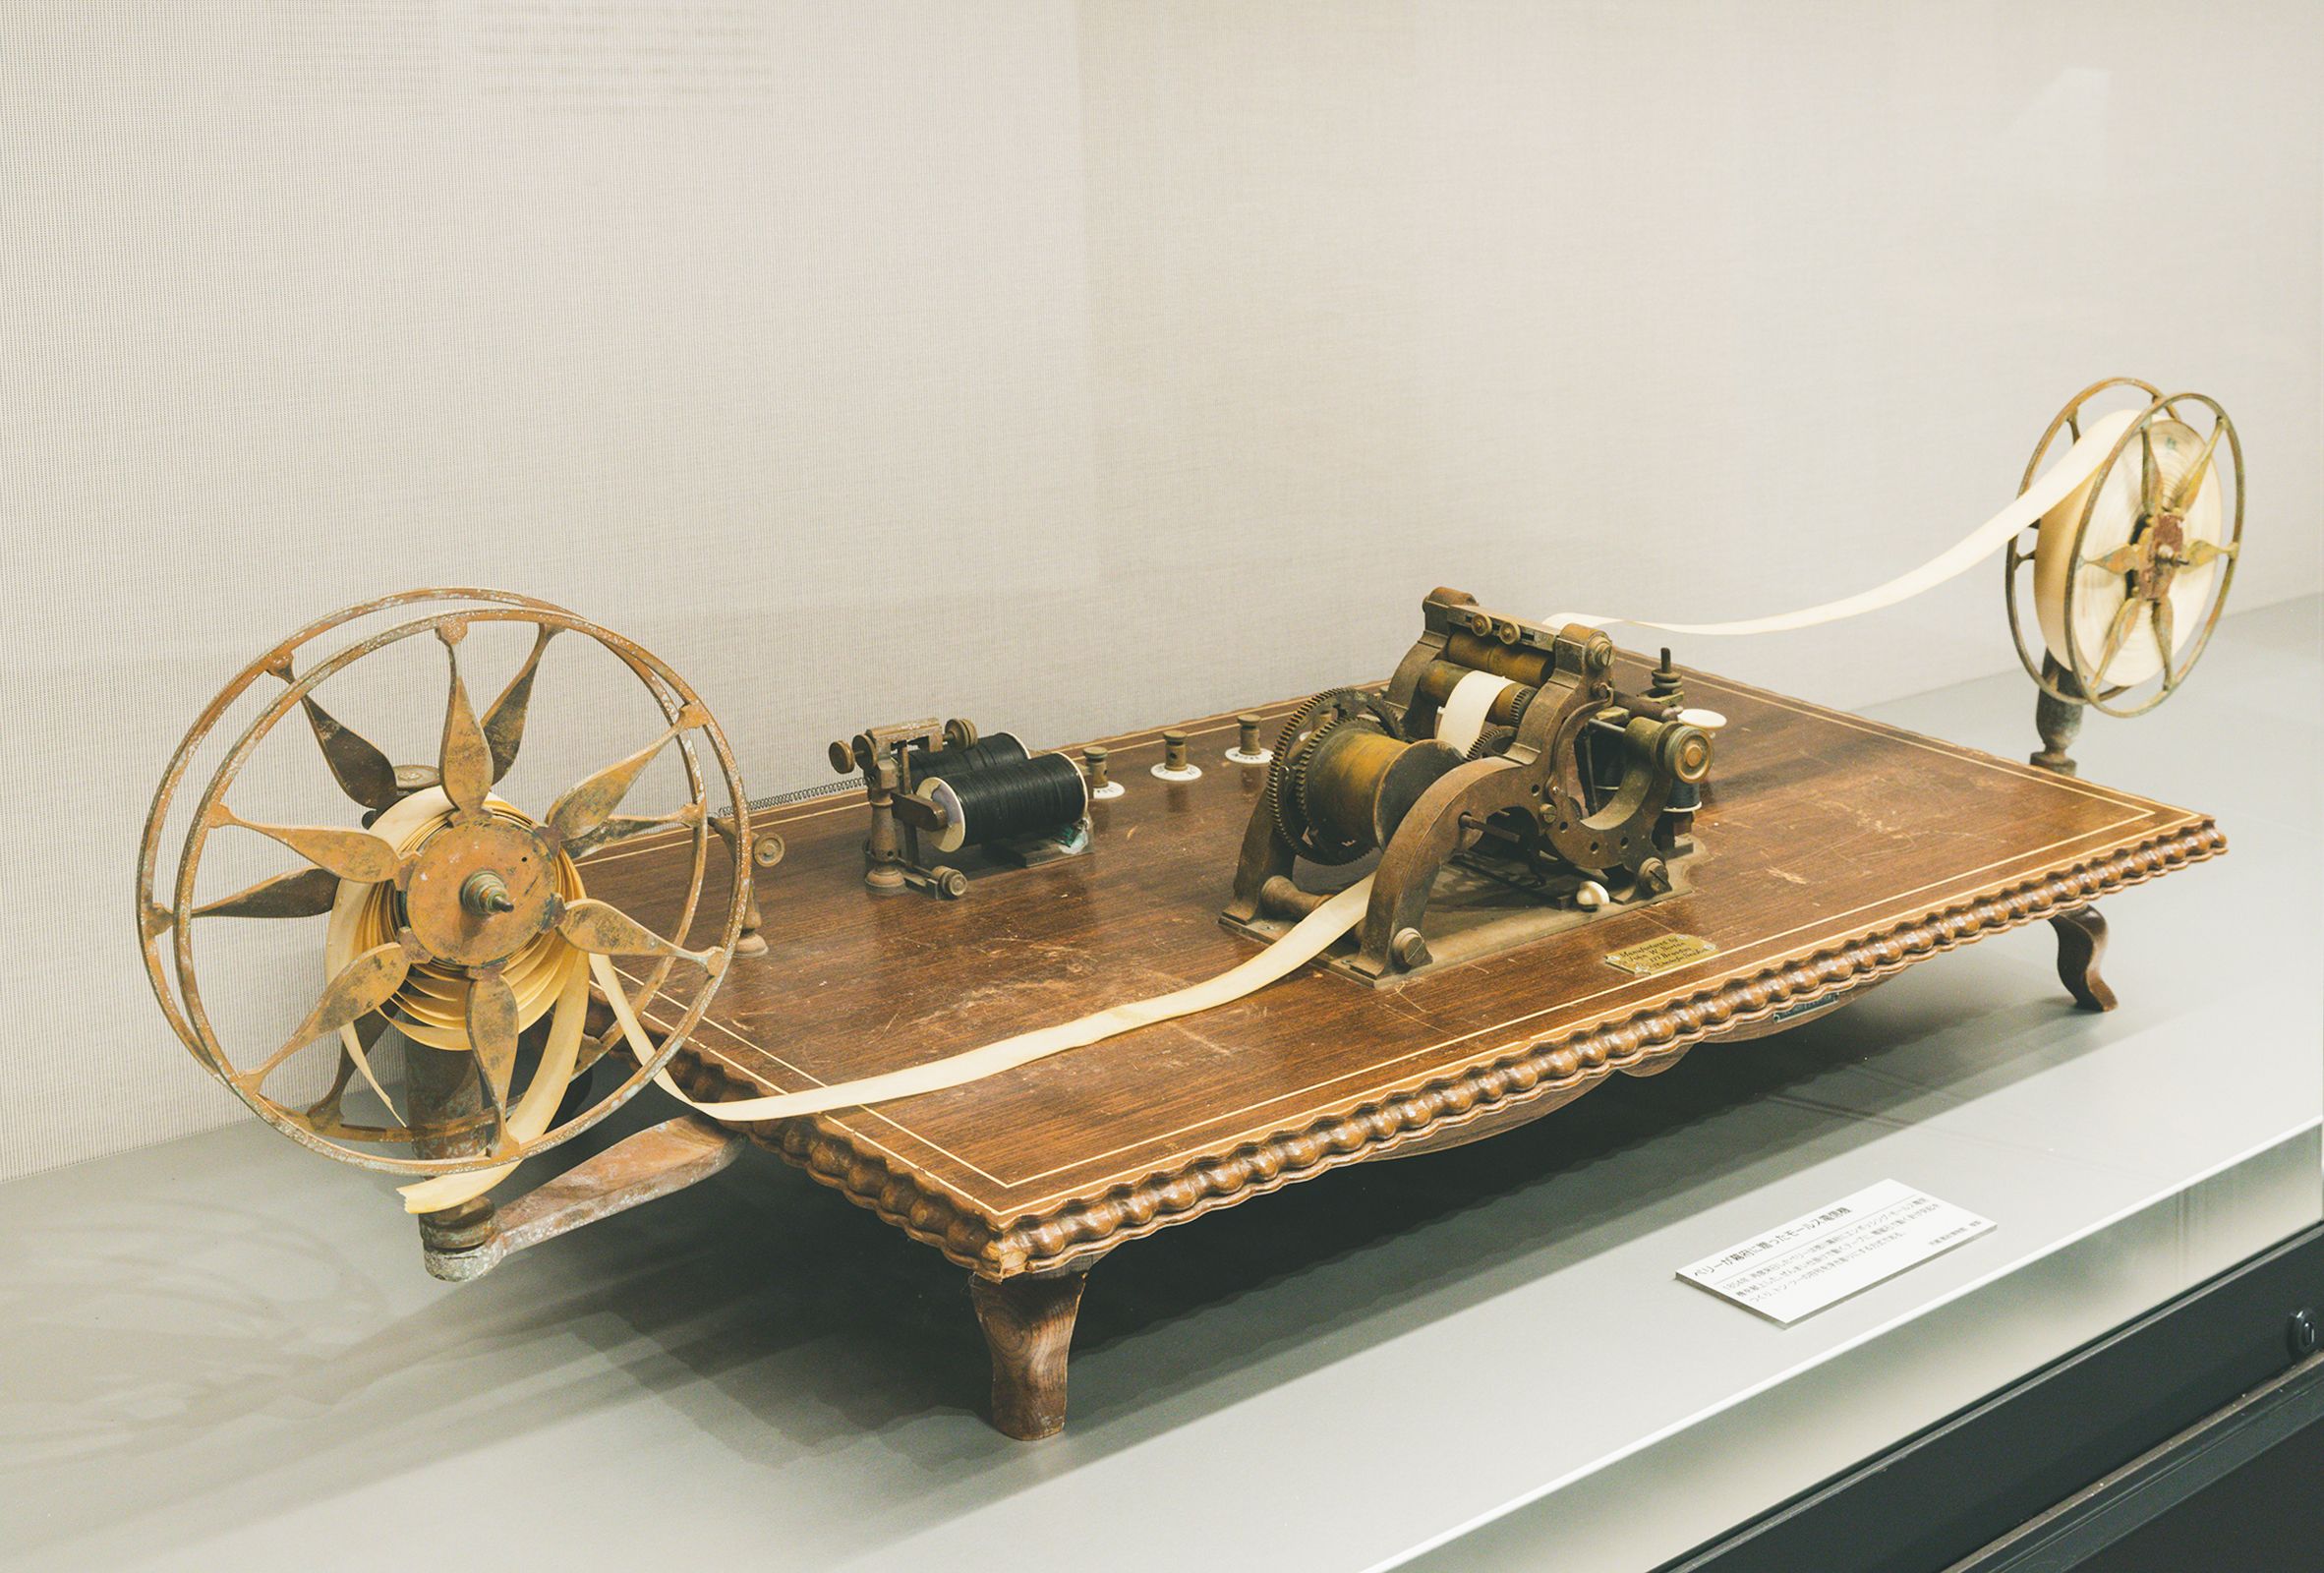 ペリー提督が徳川幕府に献上したエンボッシング・モールス電信機の複製